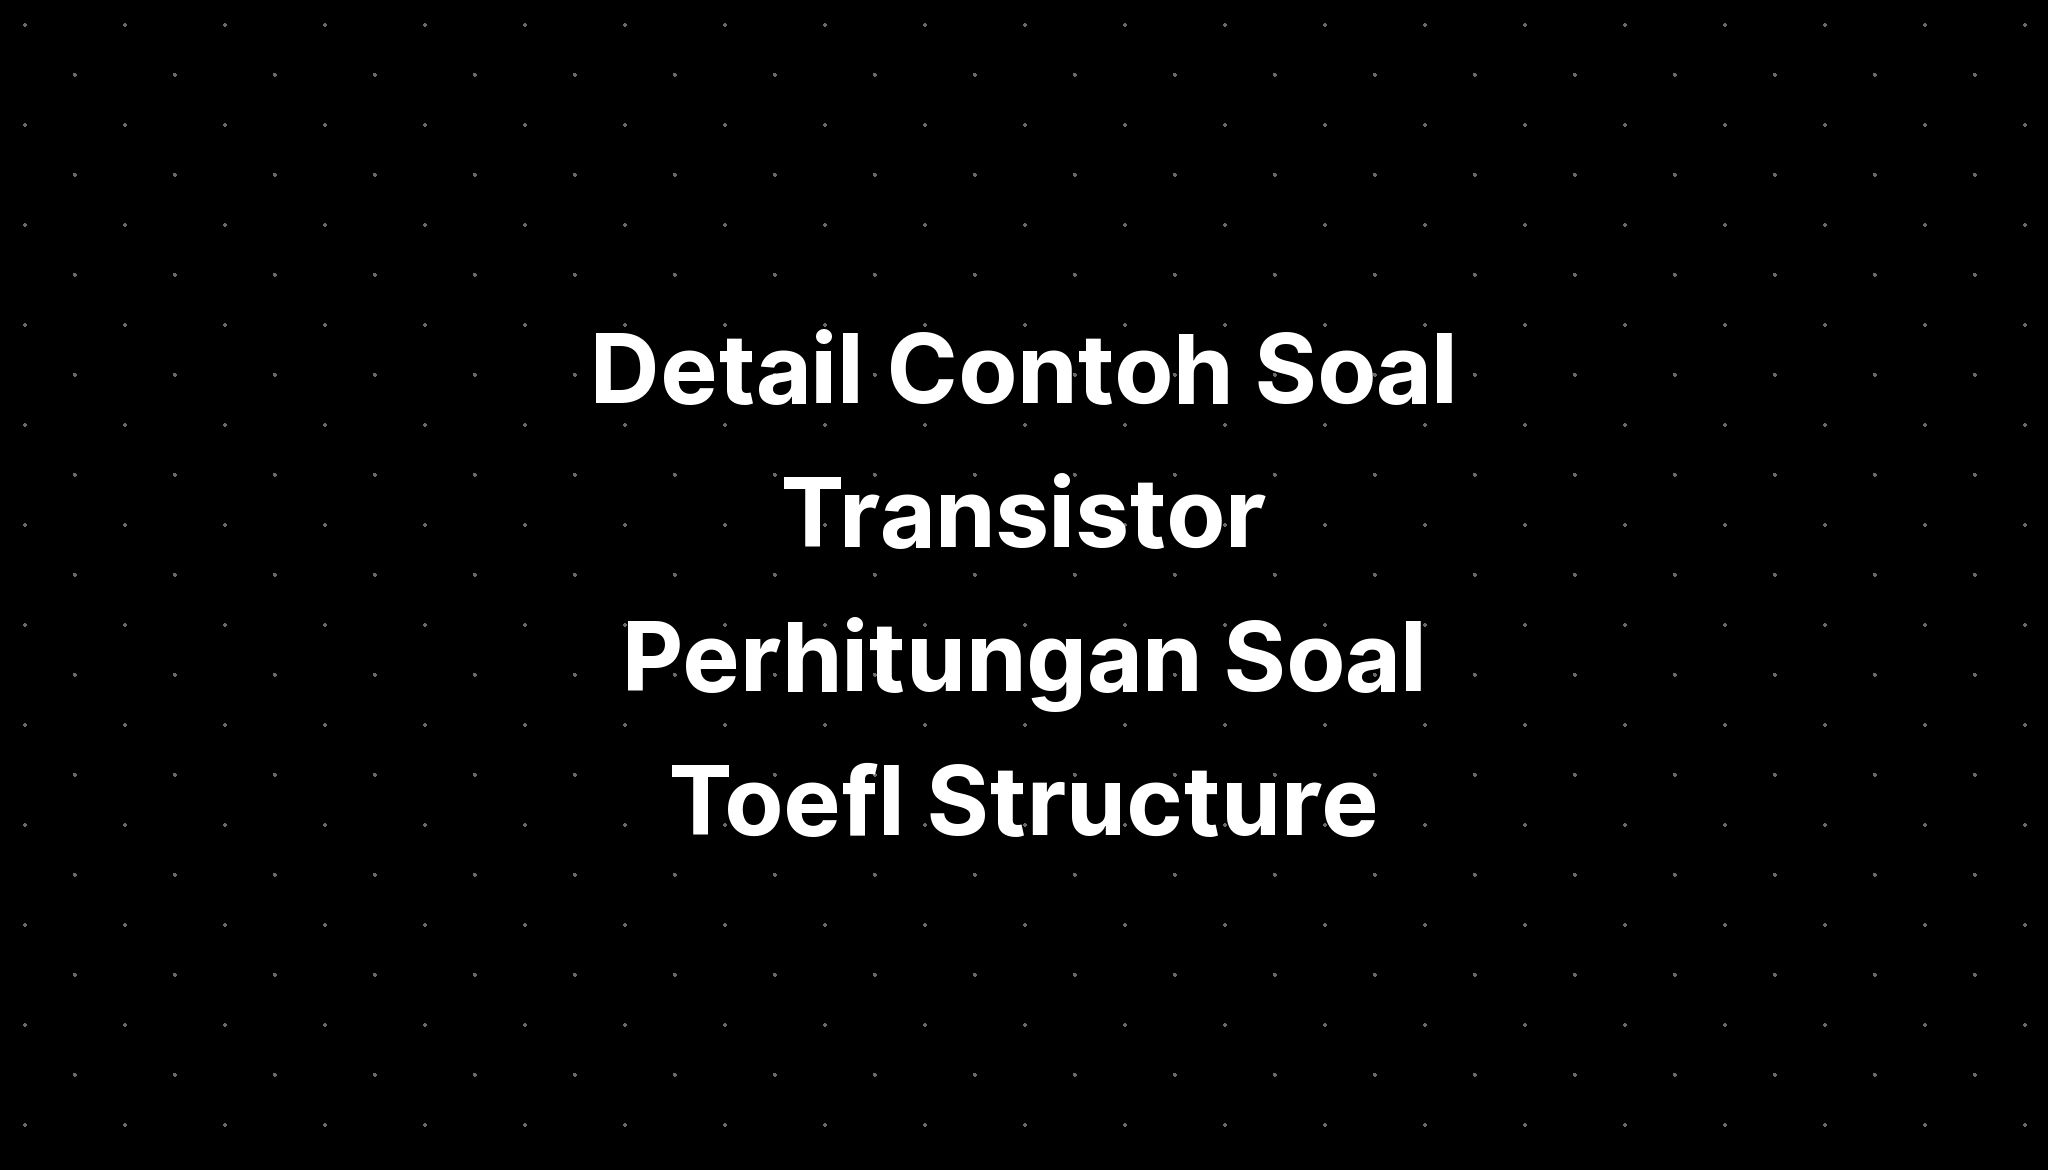 Detail Contoh Soal Transistor Perhitungan Soal Toefl Written Expression